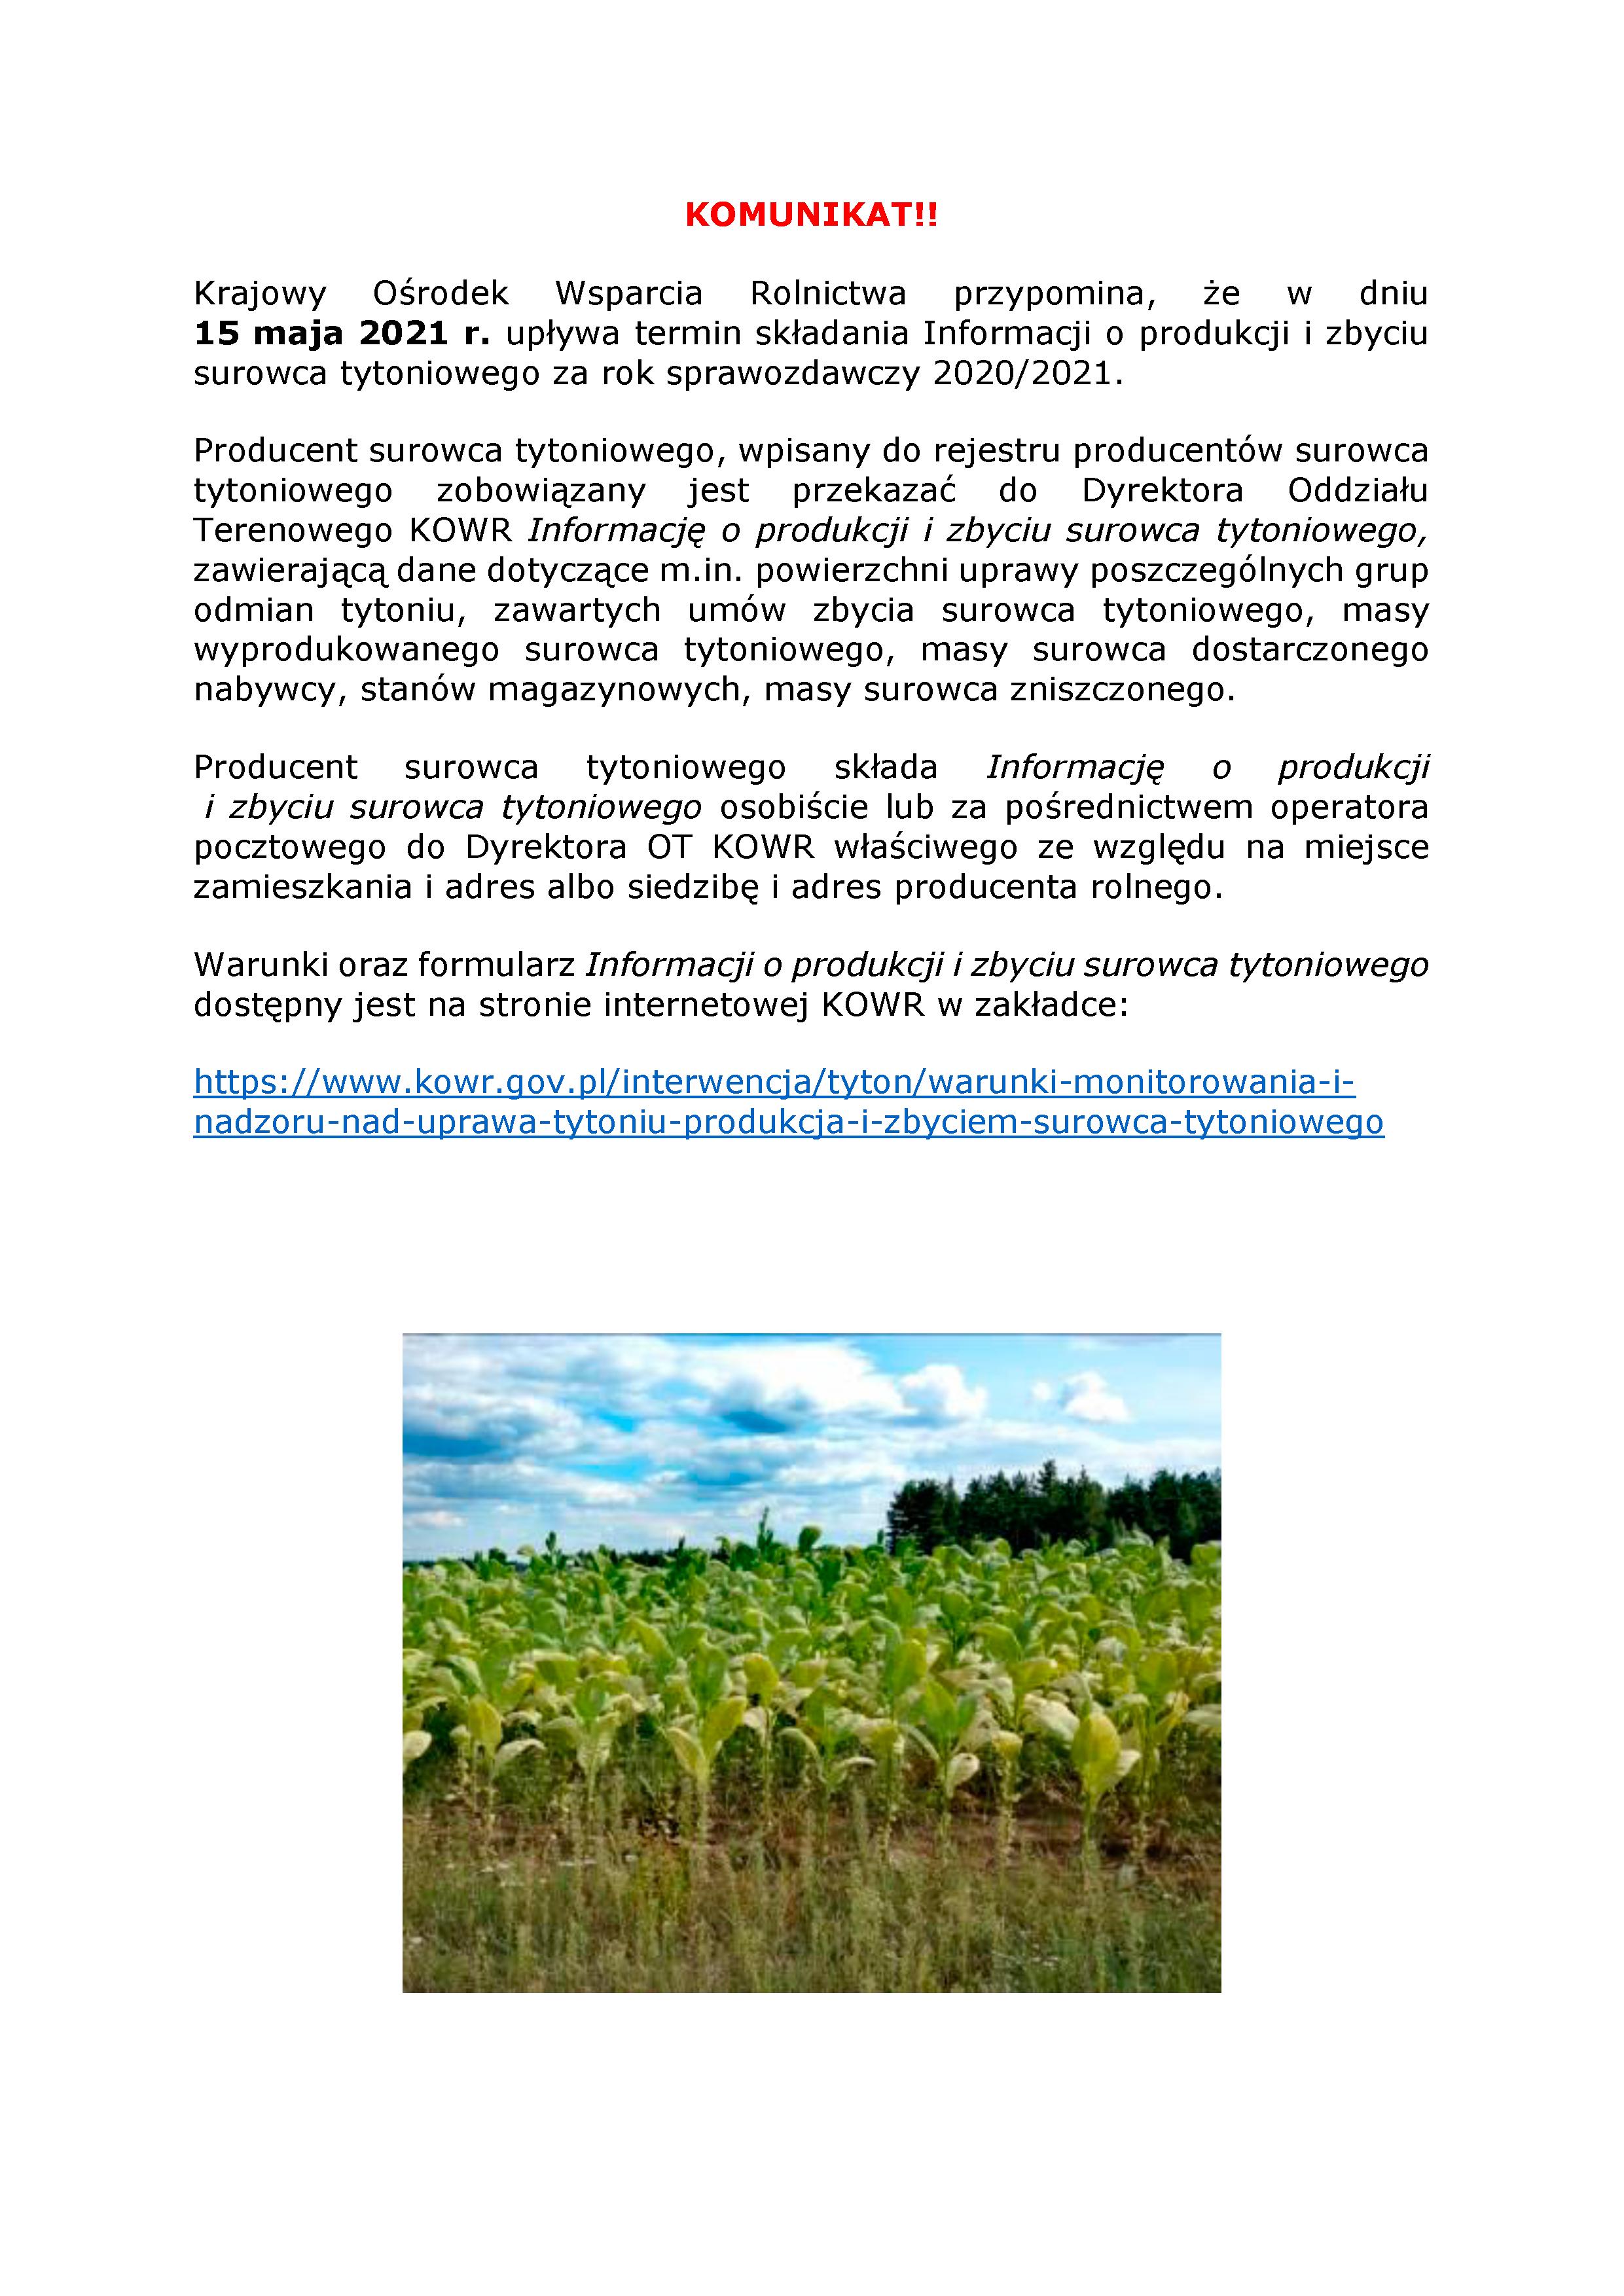 Krajowy Ośrodek Wsparcia Rolnictwa przypomina, że w dniu  15 maja 2021 r. upływa termin składania Informacji o produkcji i zbyciu surowca tytoniowego za rok sprawozdawczy 2020/2021.